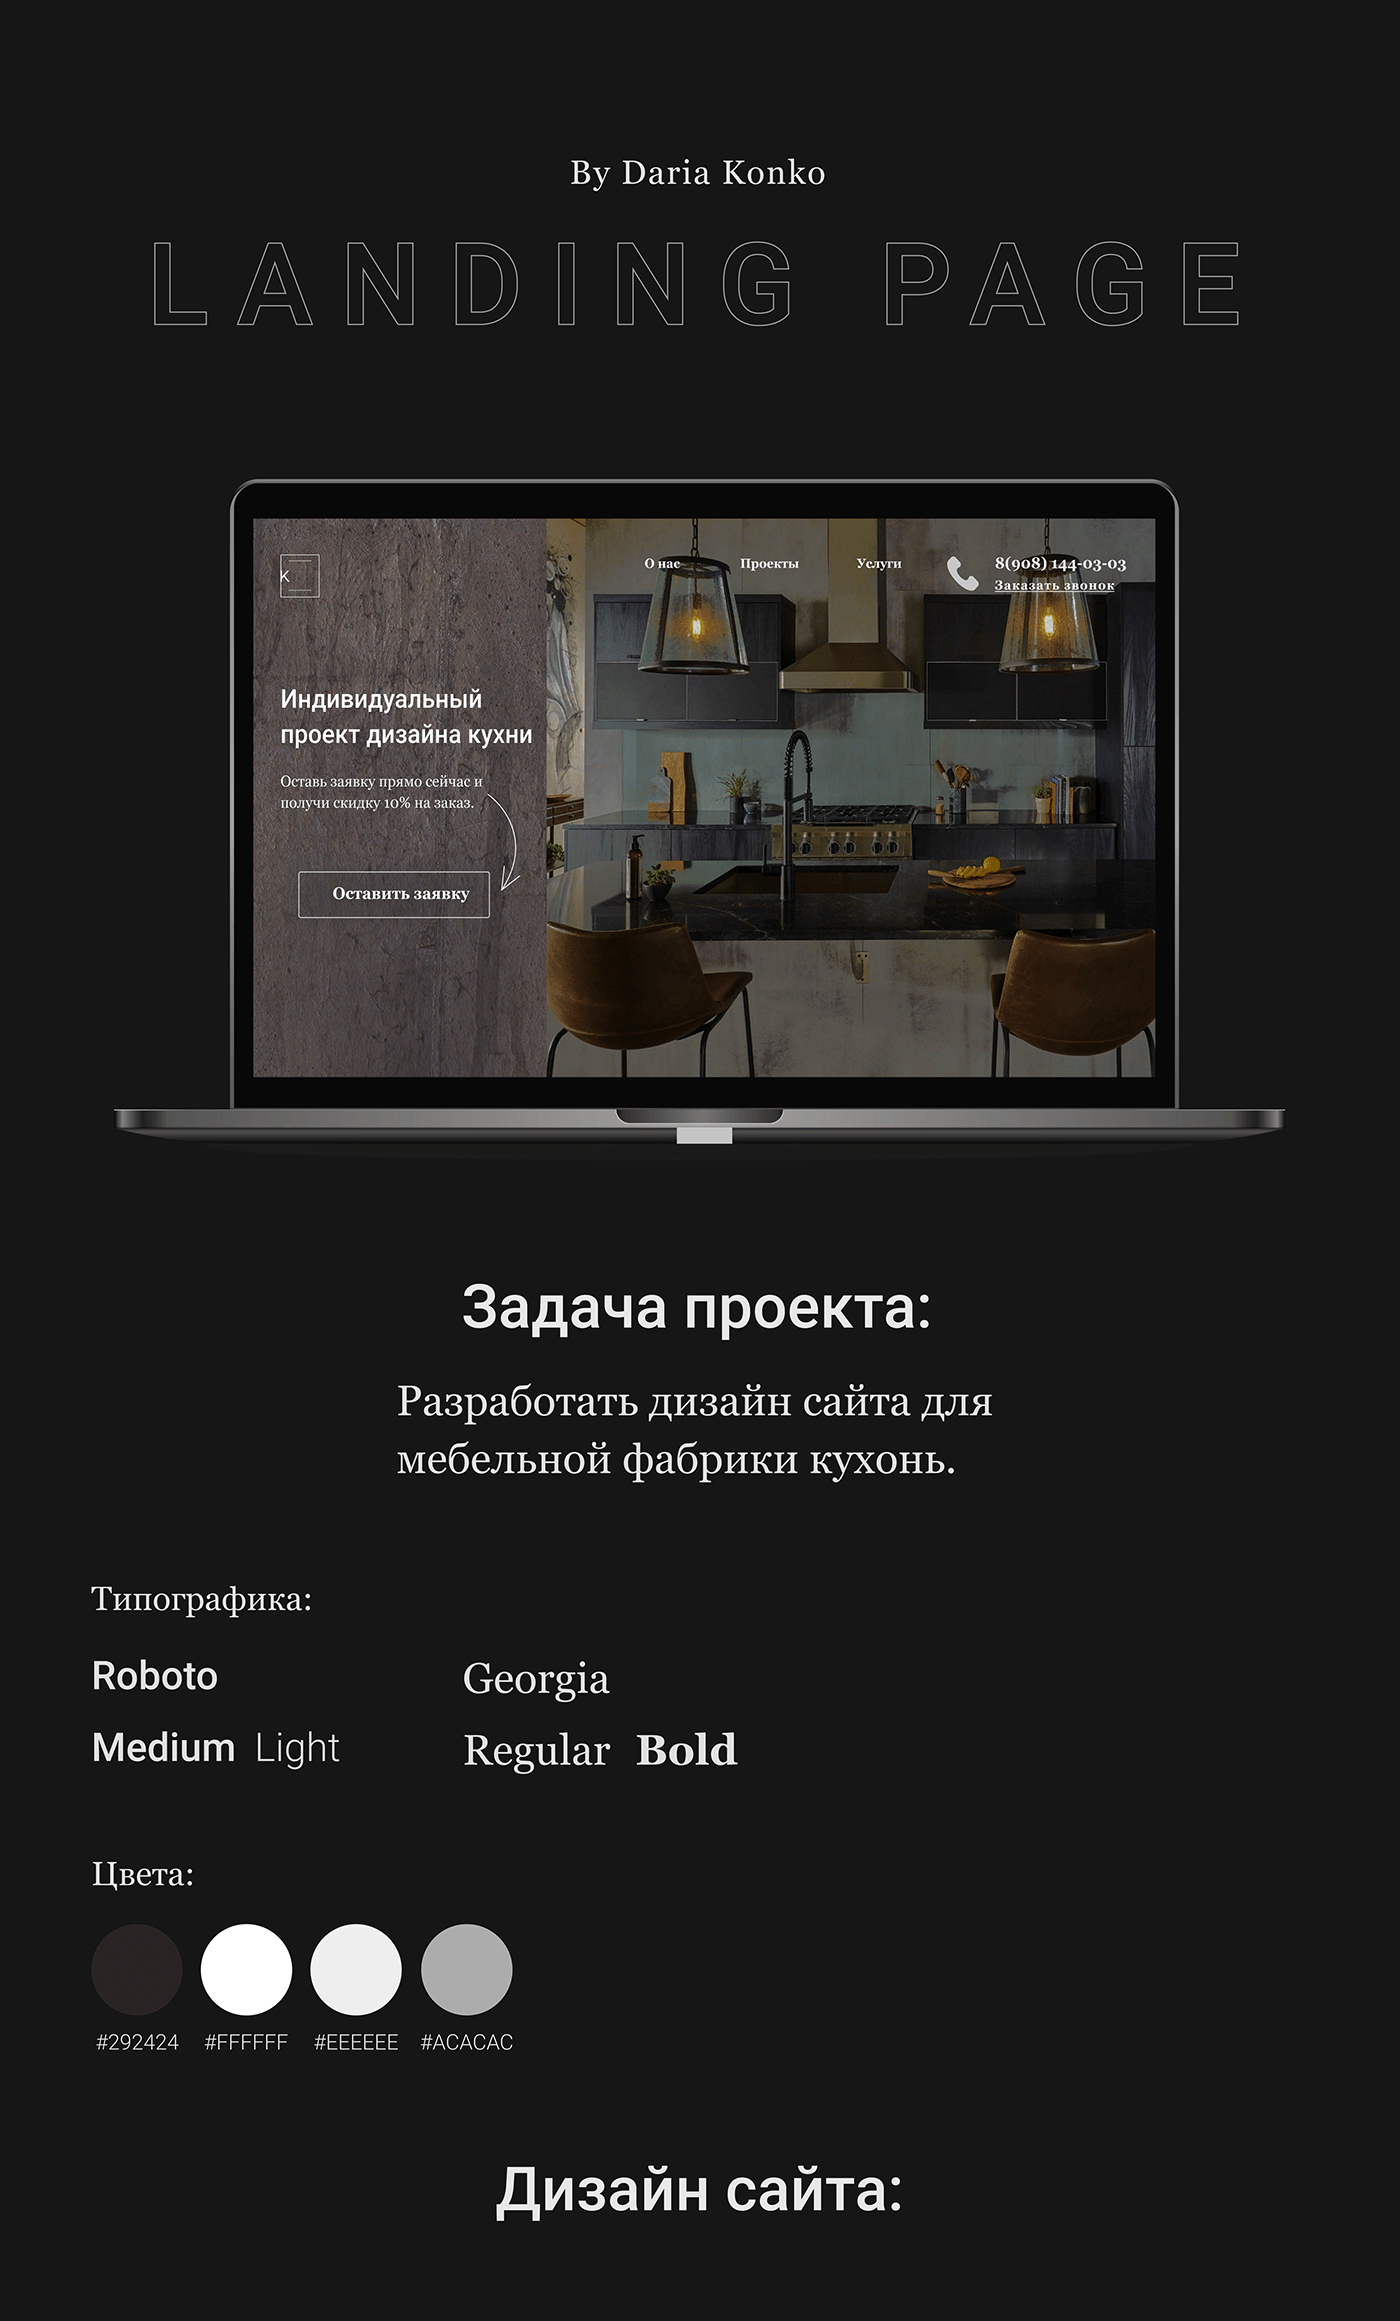 Дизайн одностраничного сайта для мебельной компании кухонь